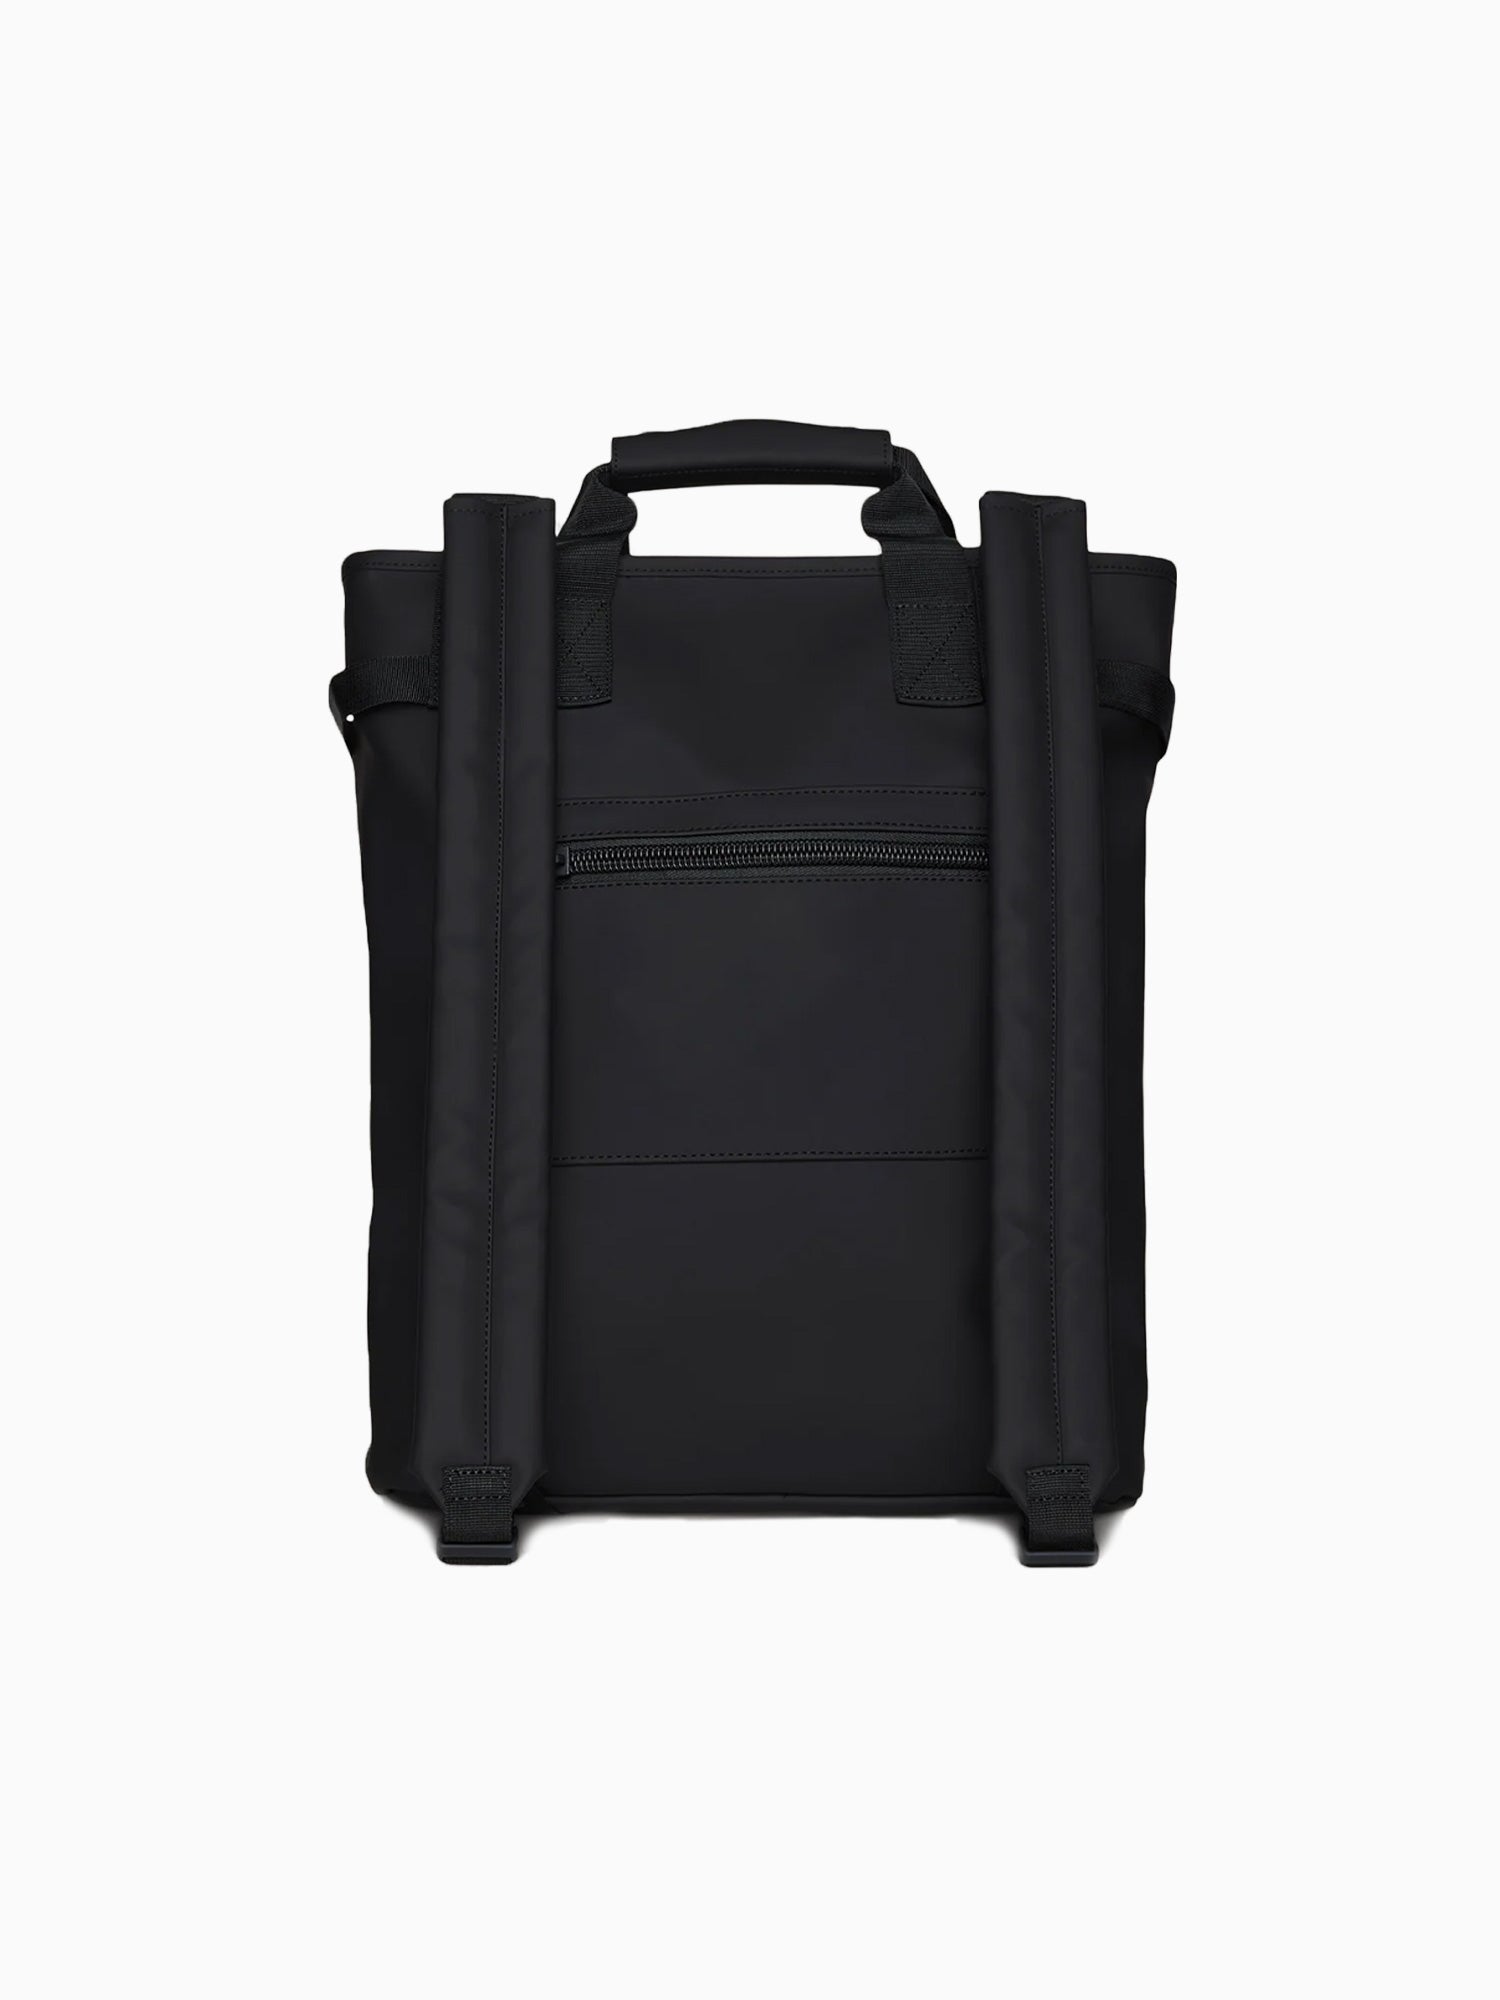 Texel Tote Backpack W3, 01 Black Black